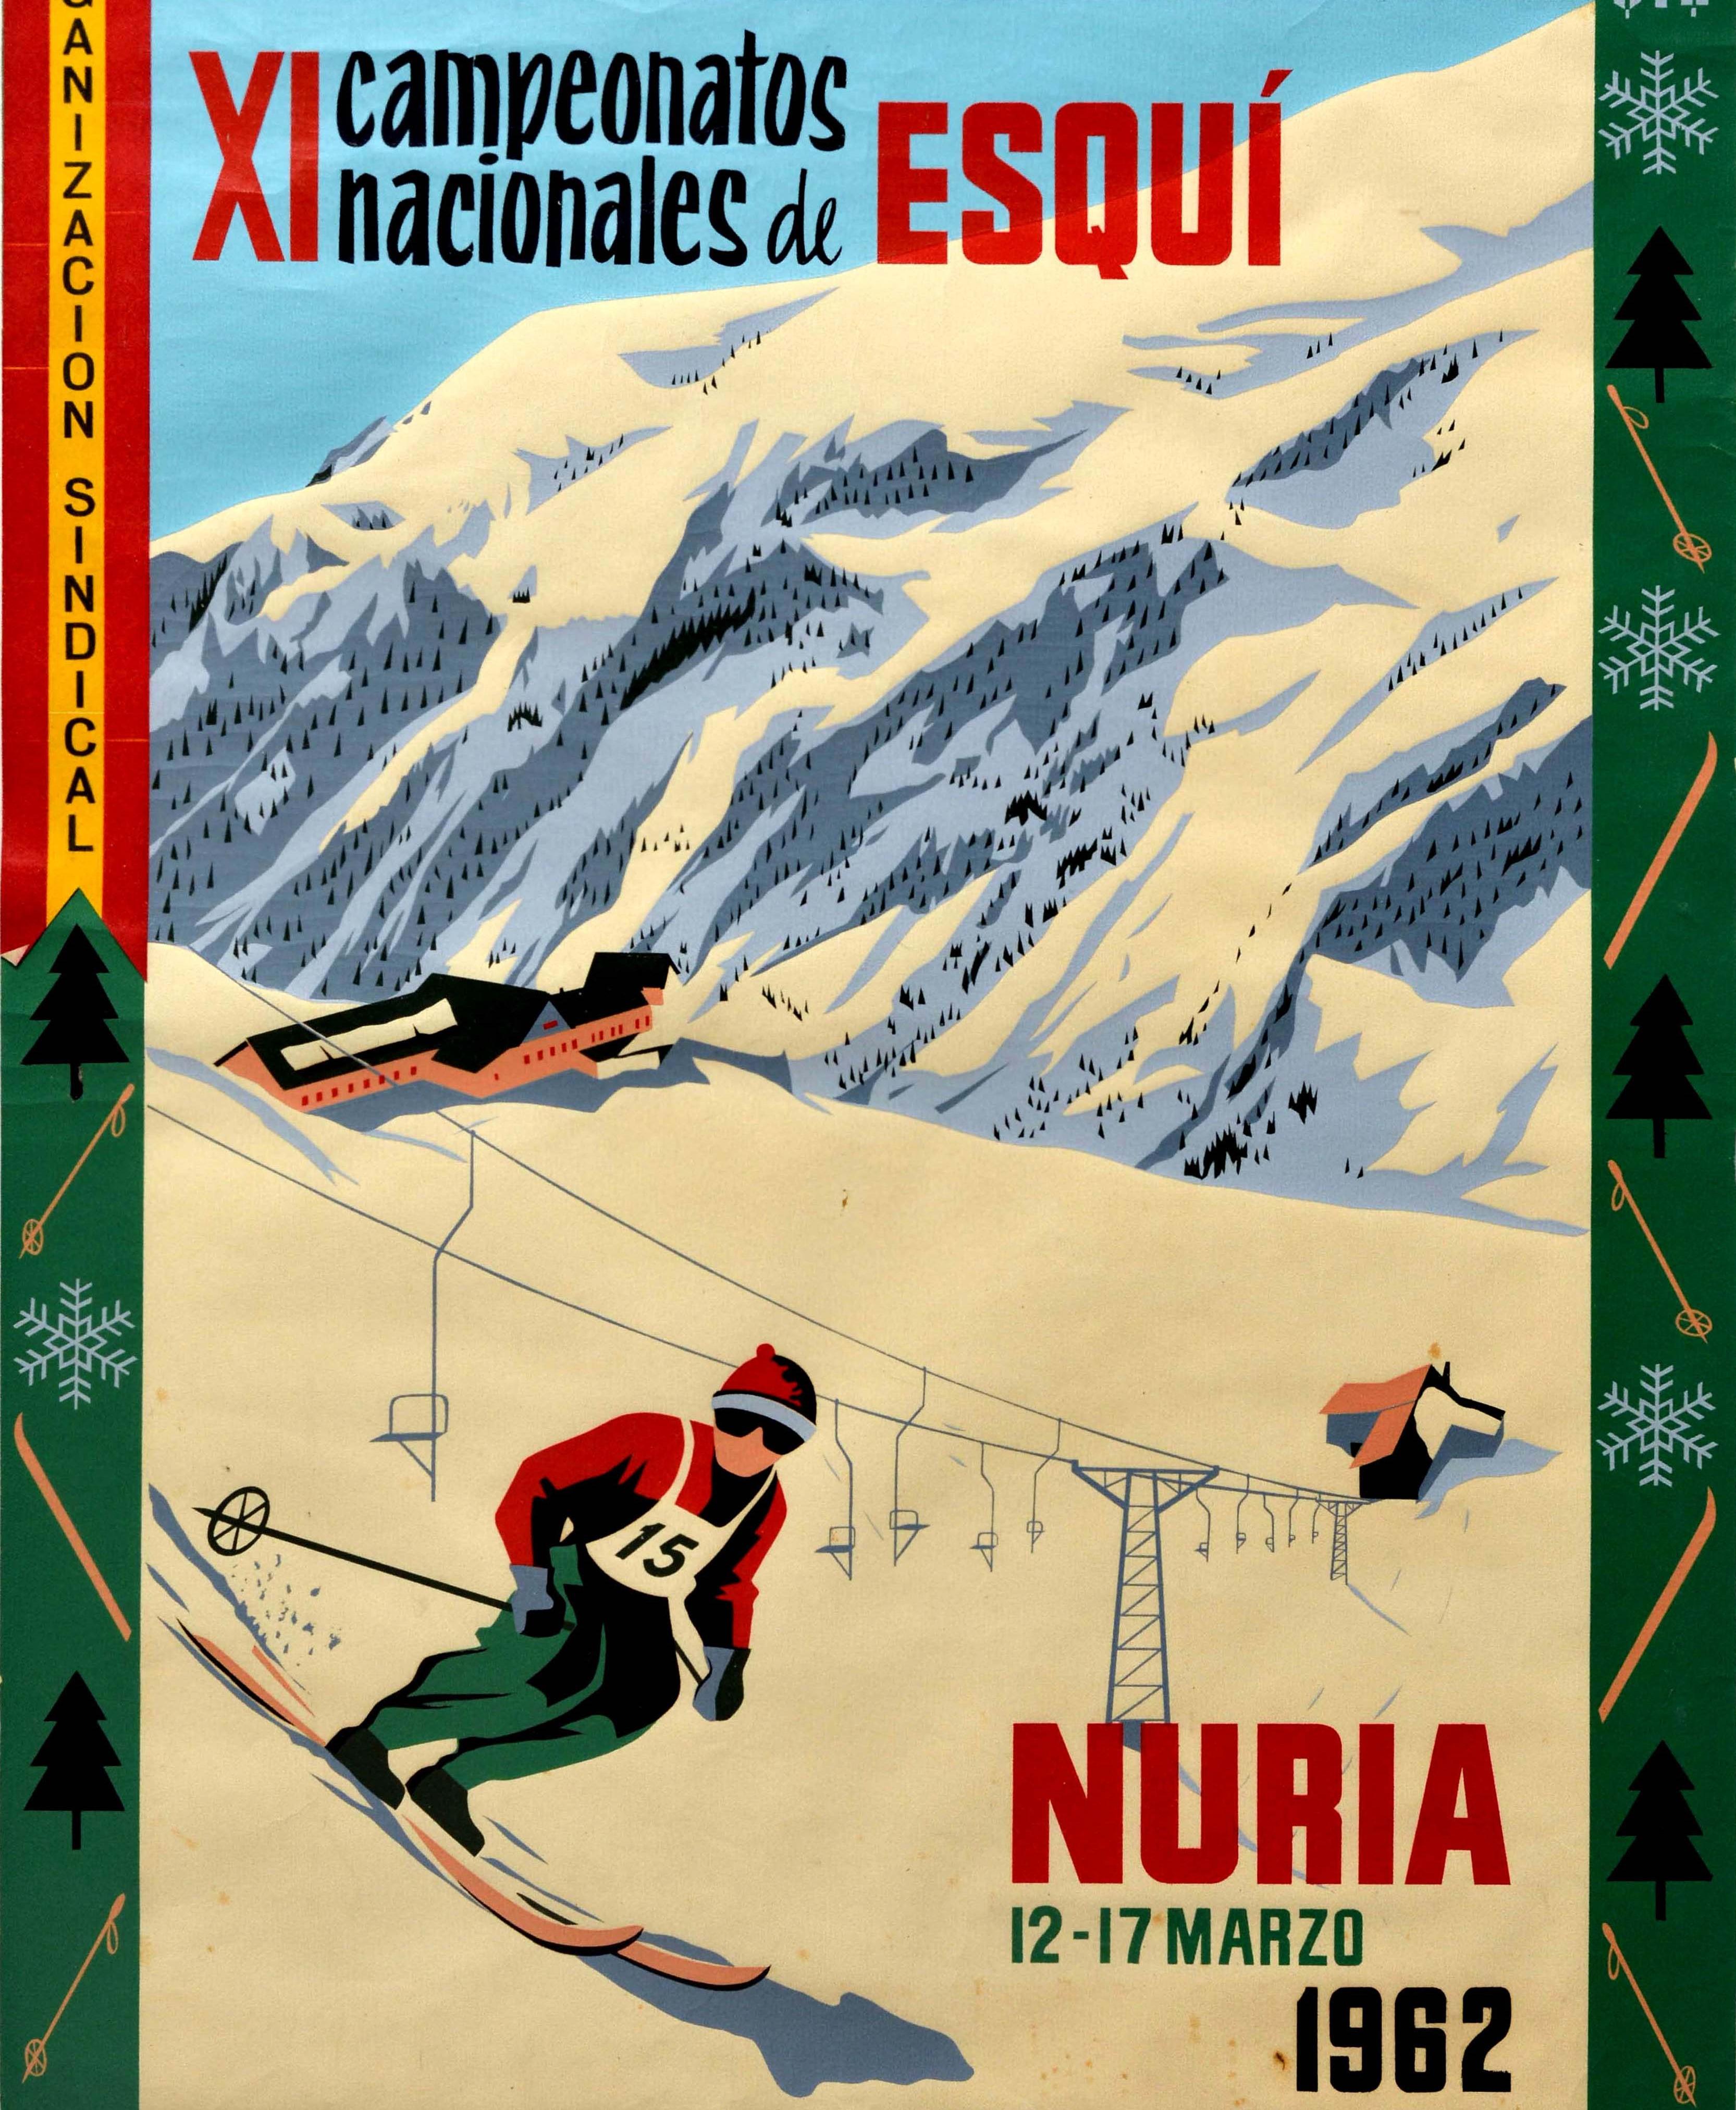 Original Vintage Poster Campeonatos Nacionales De Esqui Nuria Ski Championship In Good Condition In London, GB